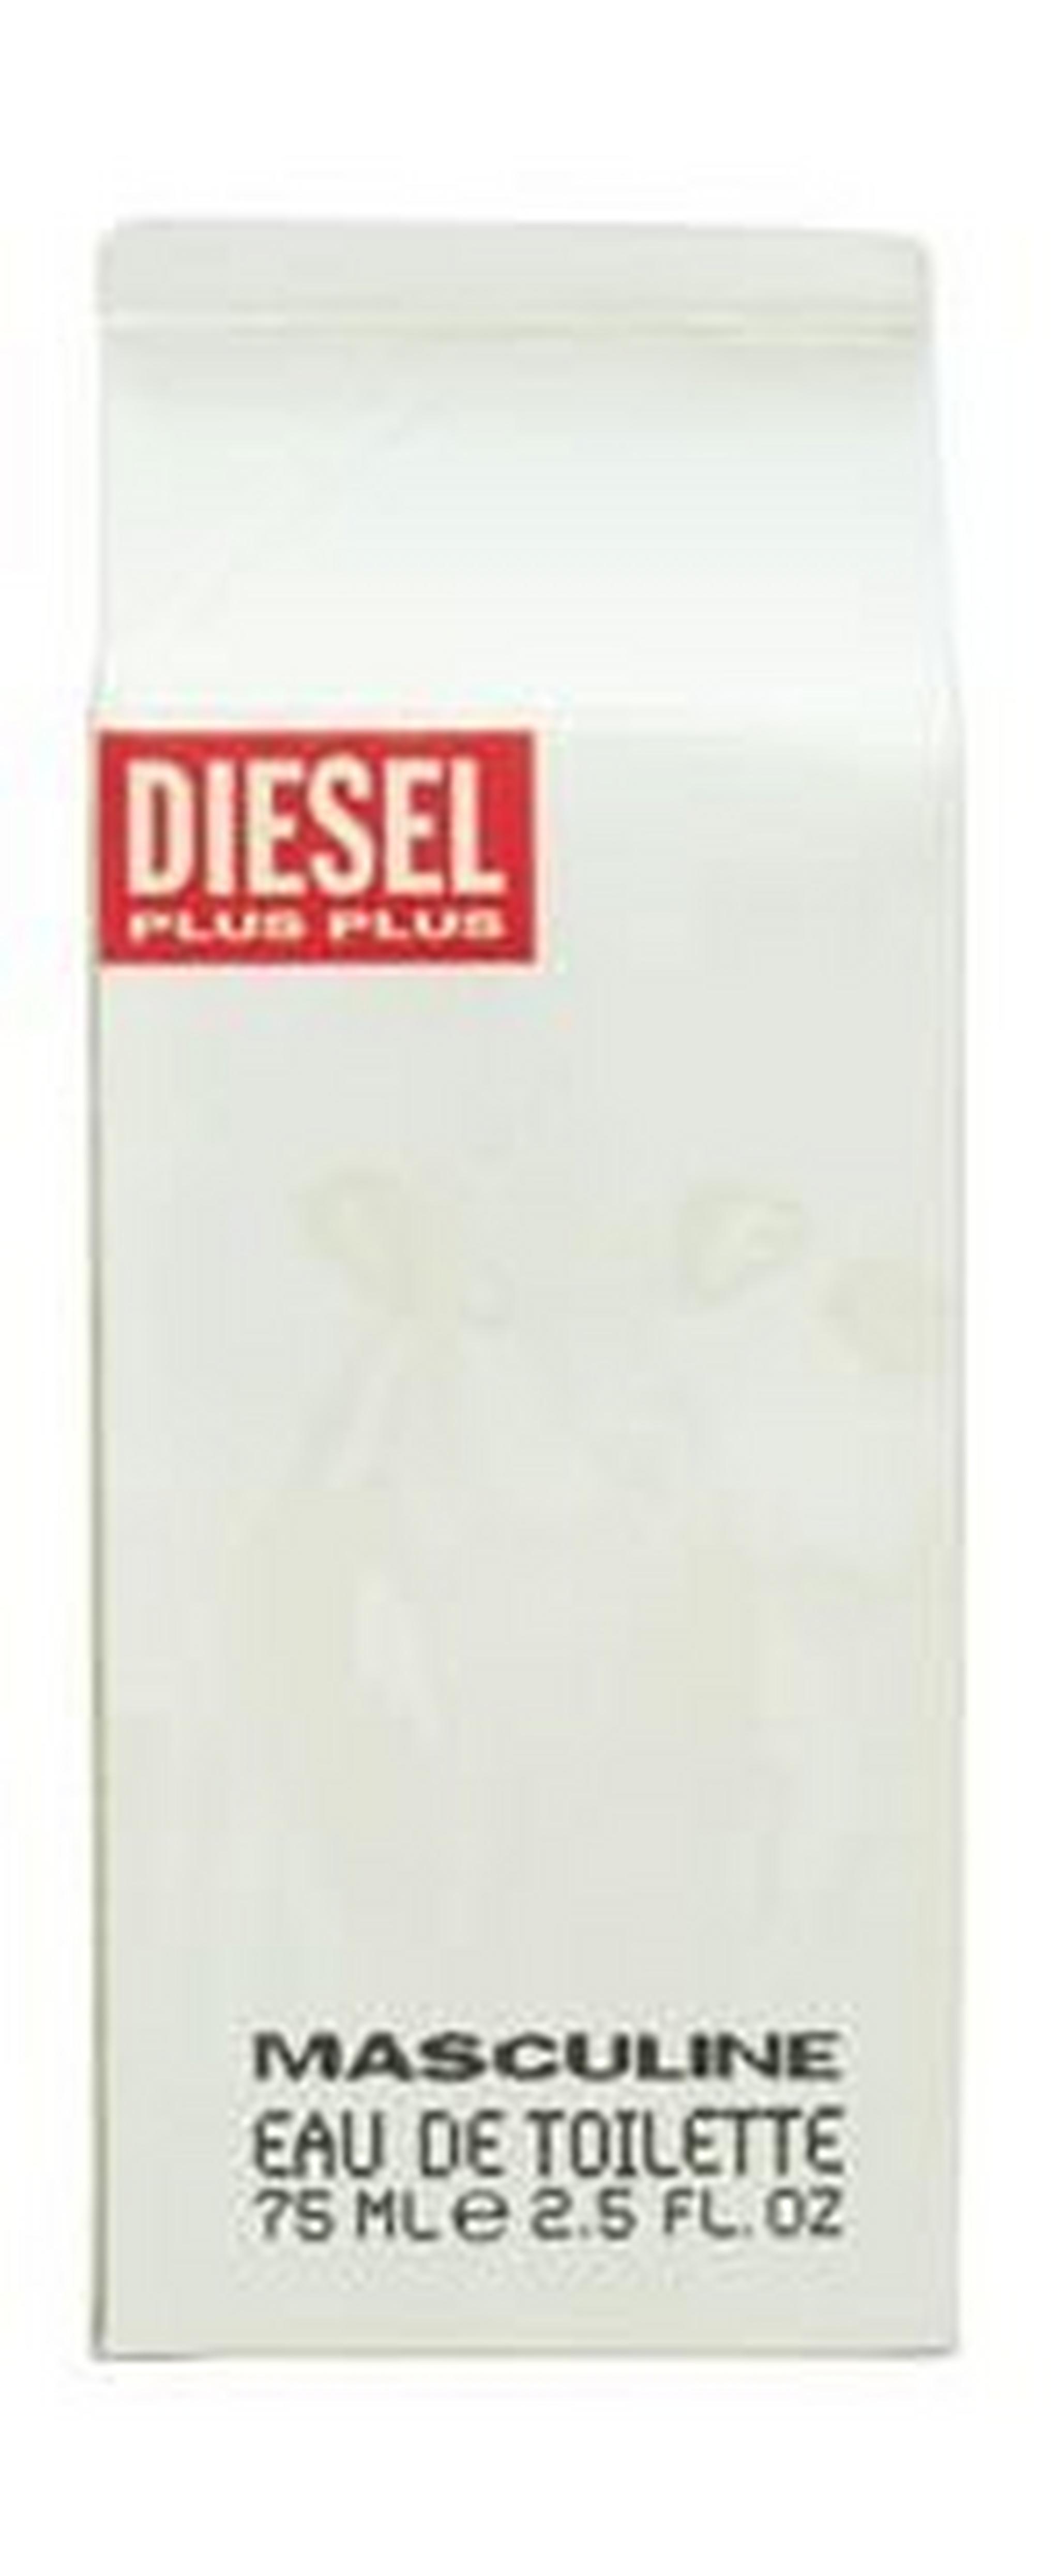 Diesel Plus Masculine For Men 75 ml Eau de Toilette